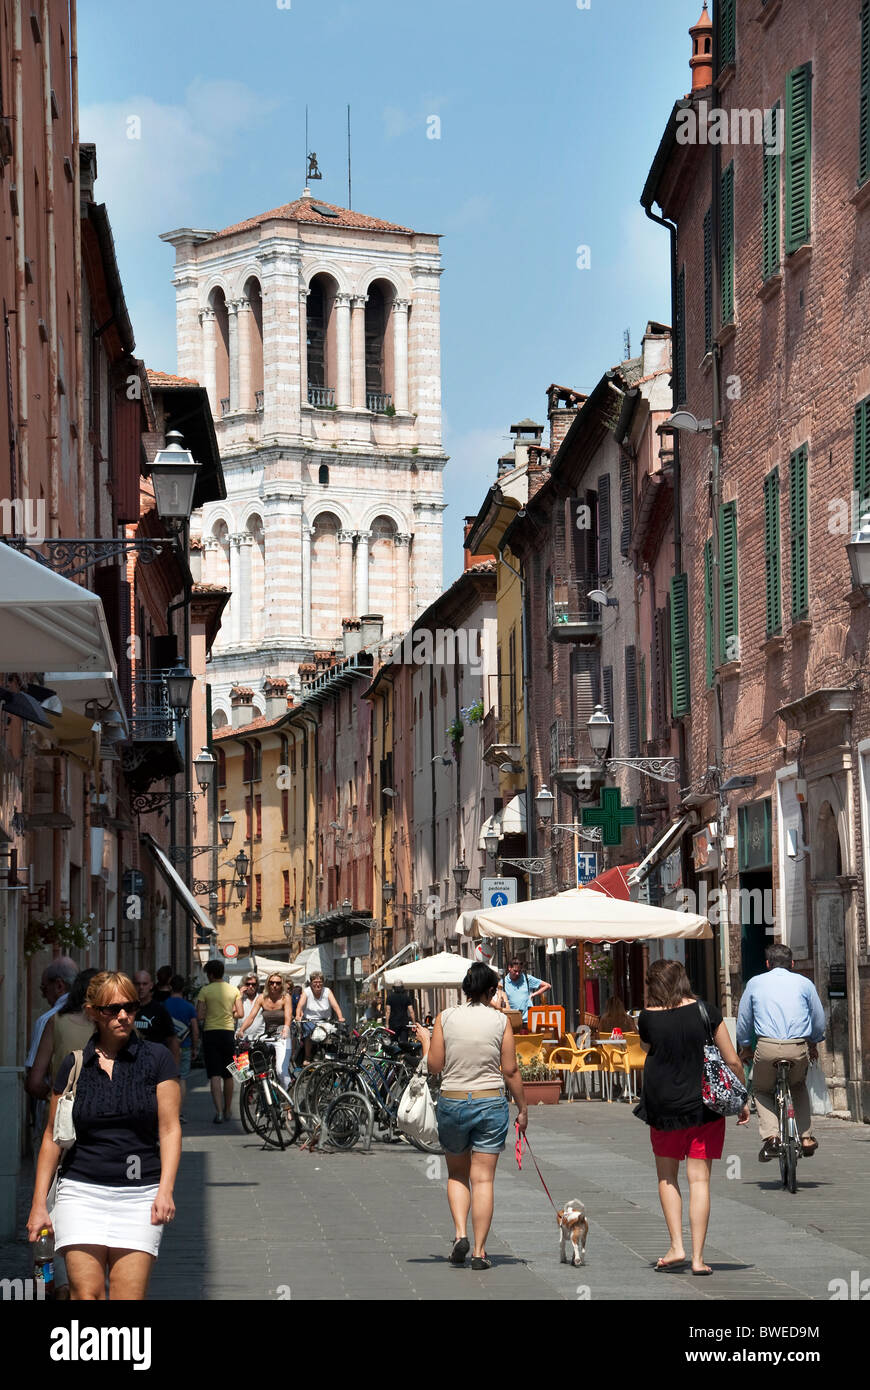 Via Mazzini, the main shopping street in Ferrara, Emilia Romagna, Italy Stock Photo